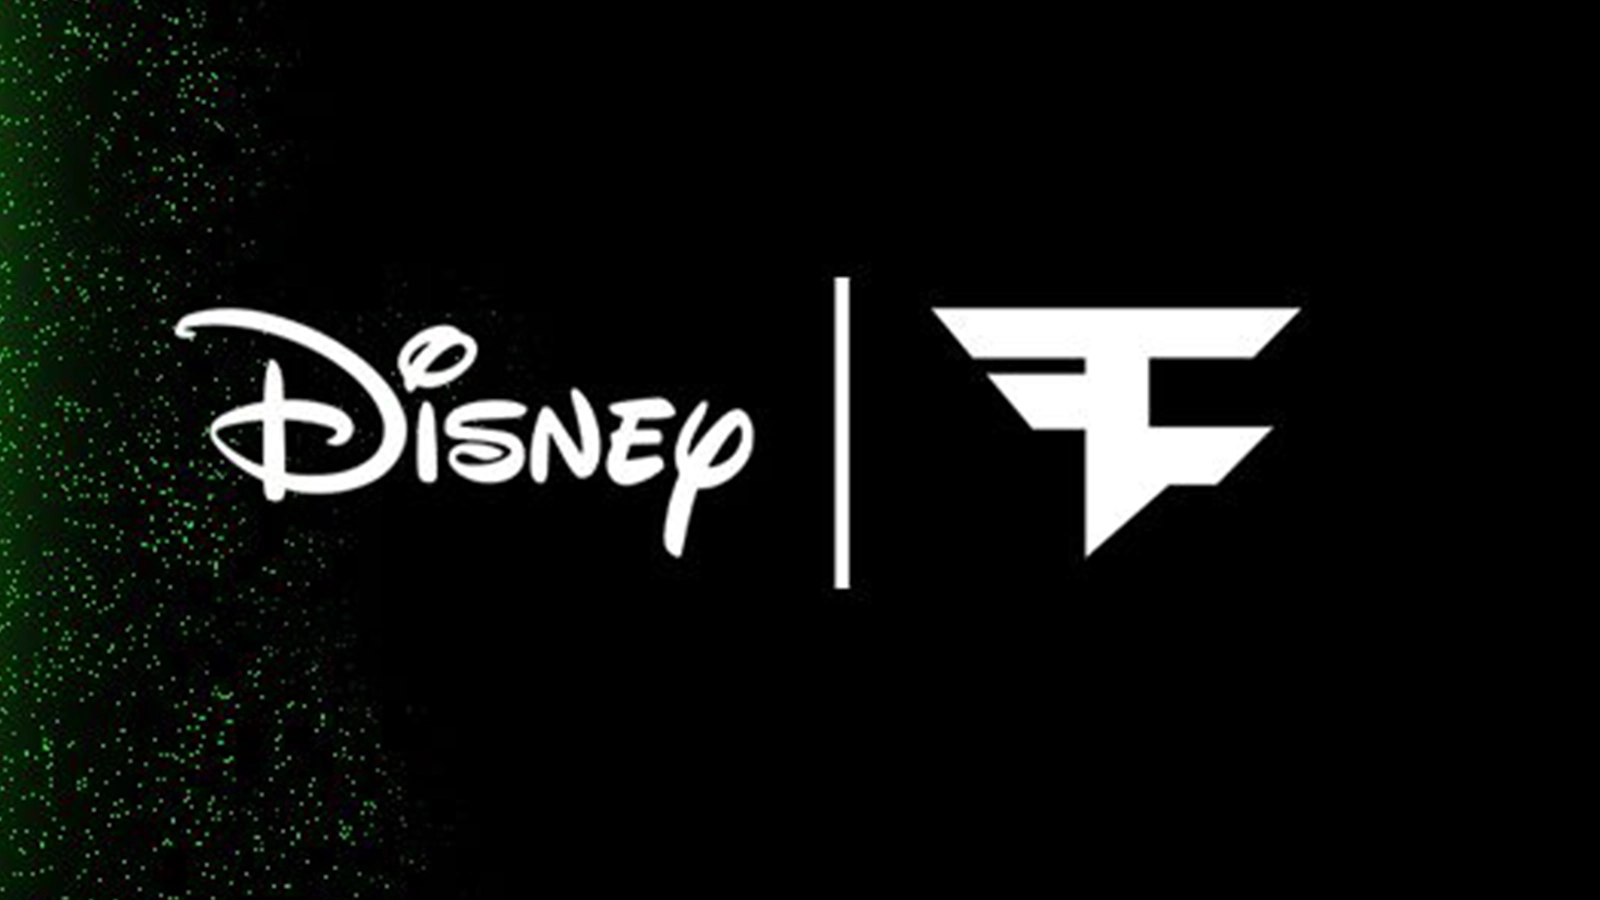 Клан faze объявил о годовом сотрудничестве с Disney!